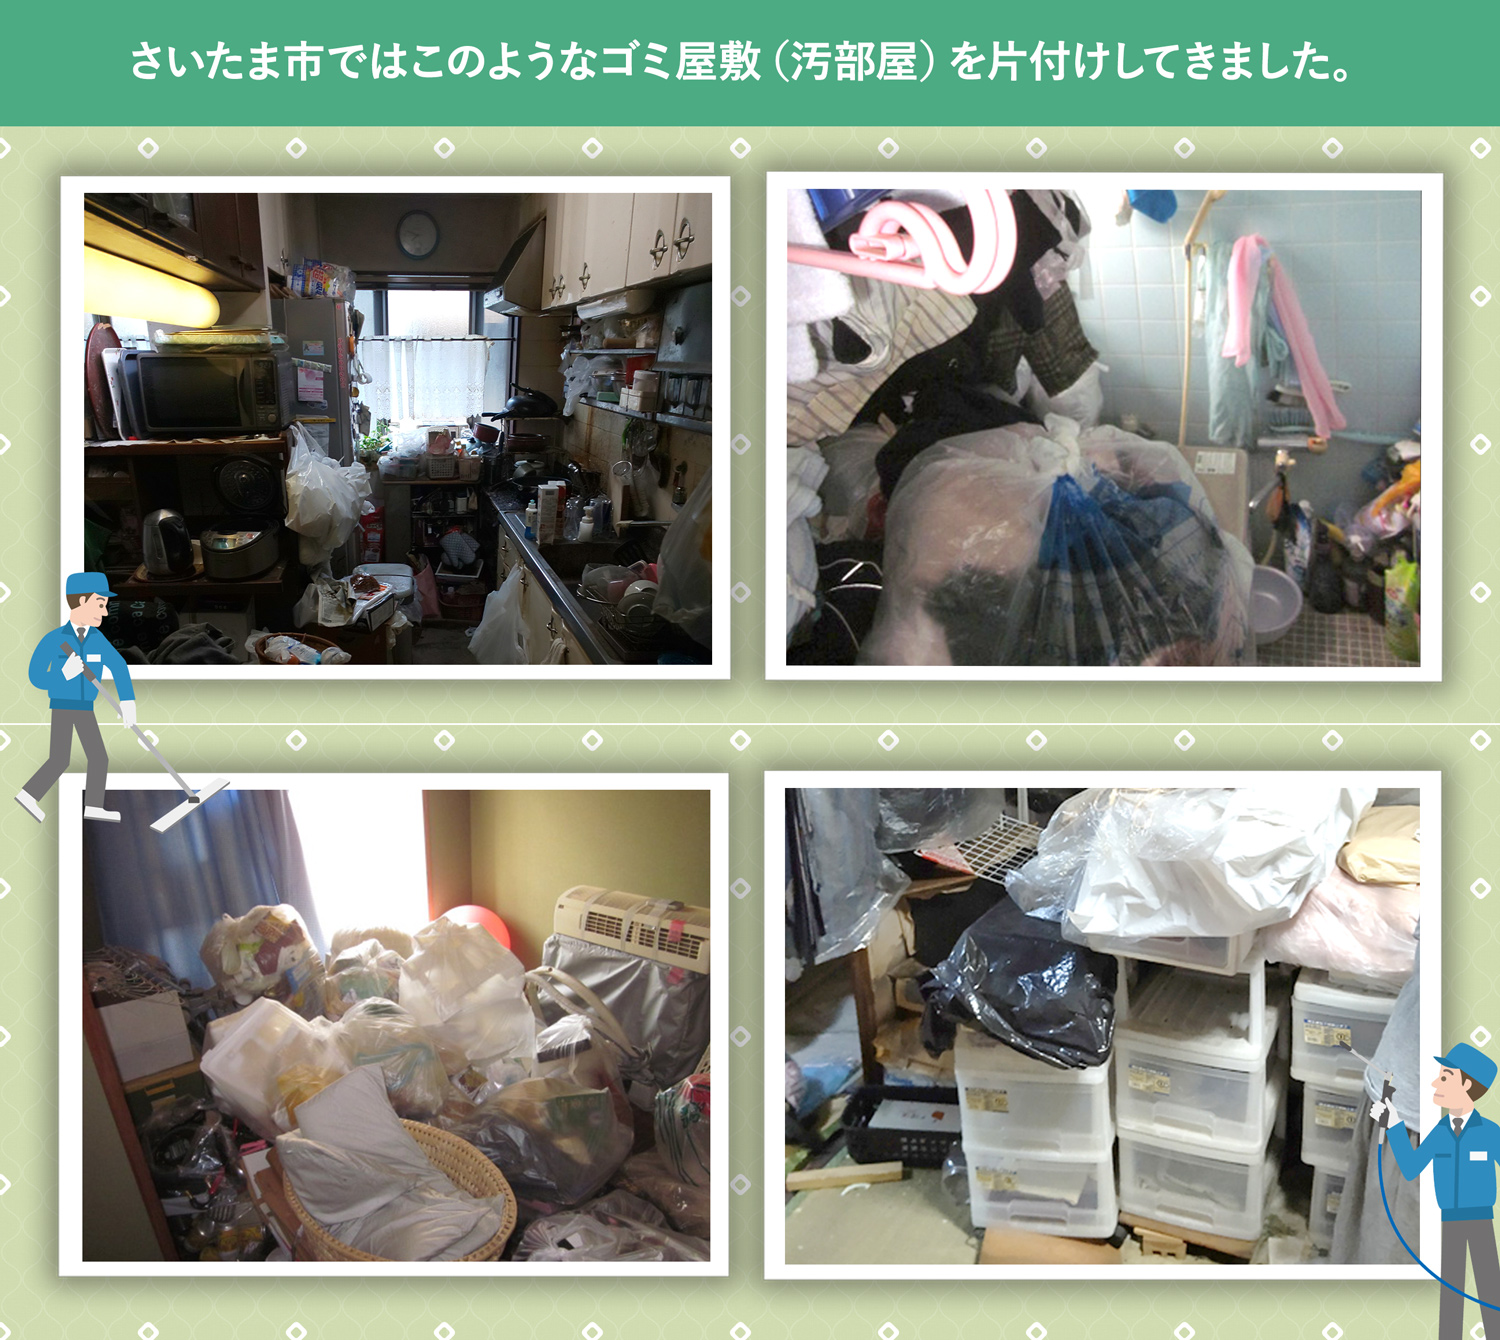 さいたま市で行ったで行ったごみ屋敷・汚部屋の片付けの一例